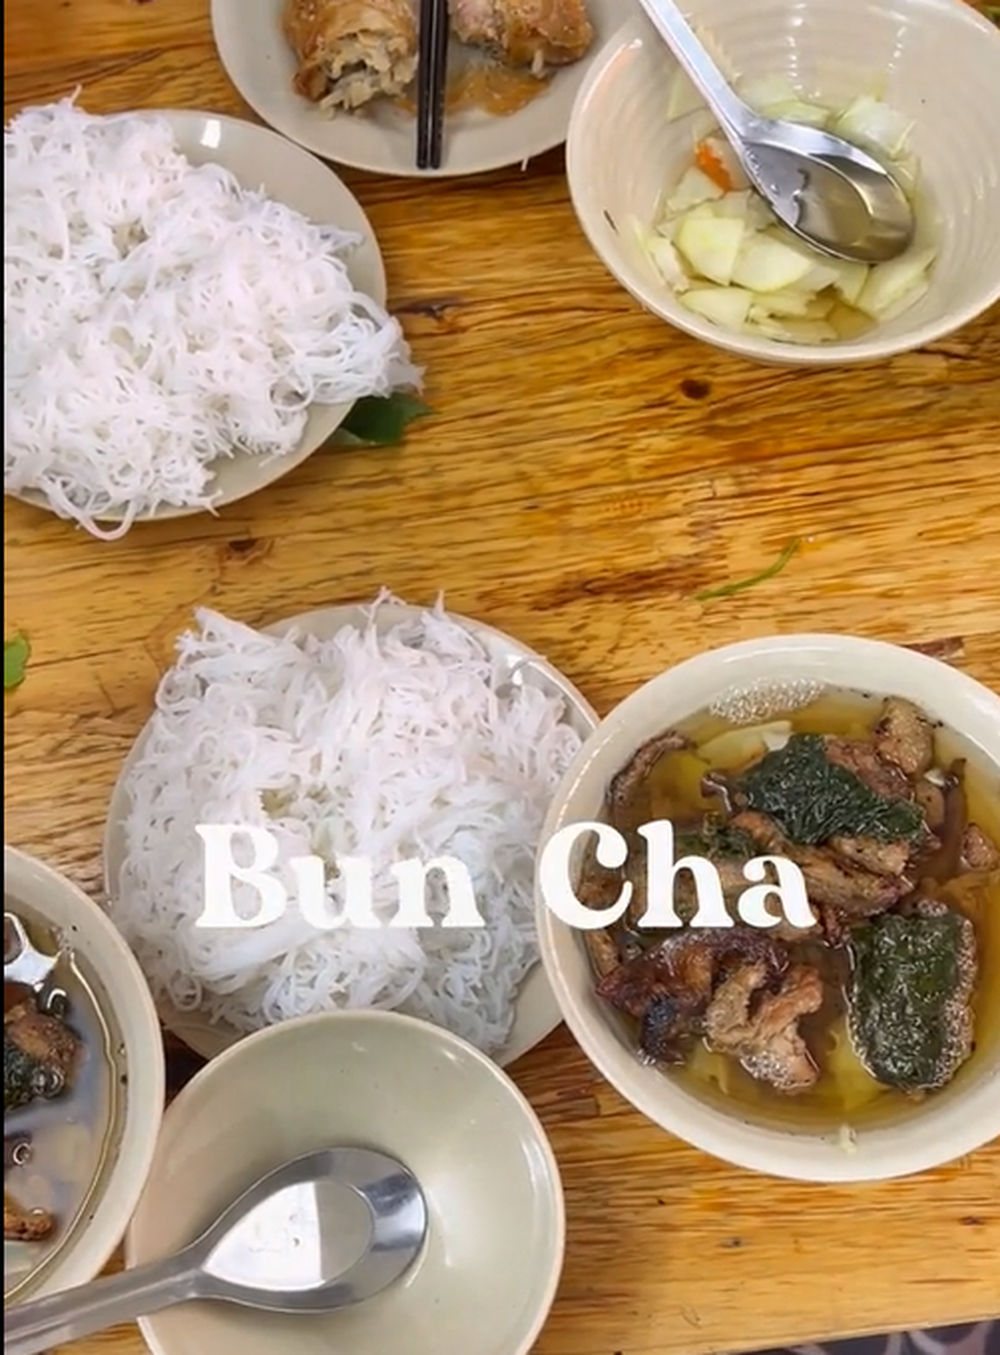 Khách nước ngoài lựa chọn 4 món từ sợi tuyệt nhất trong ẩm thực Việt - ảnh 9